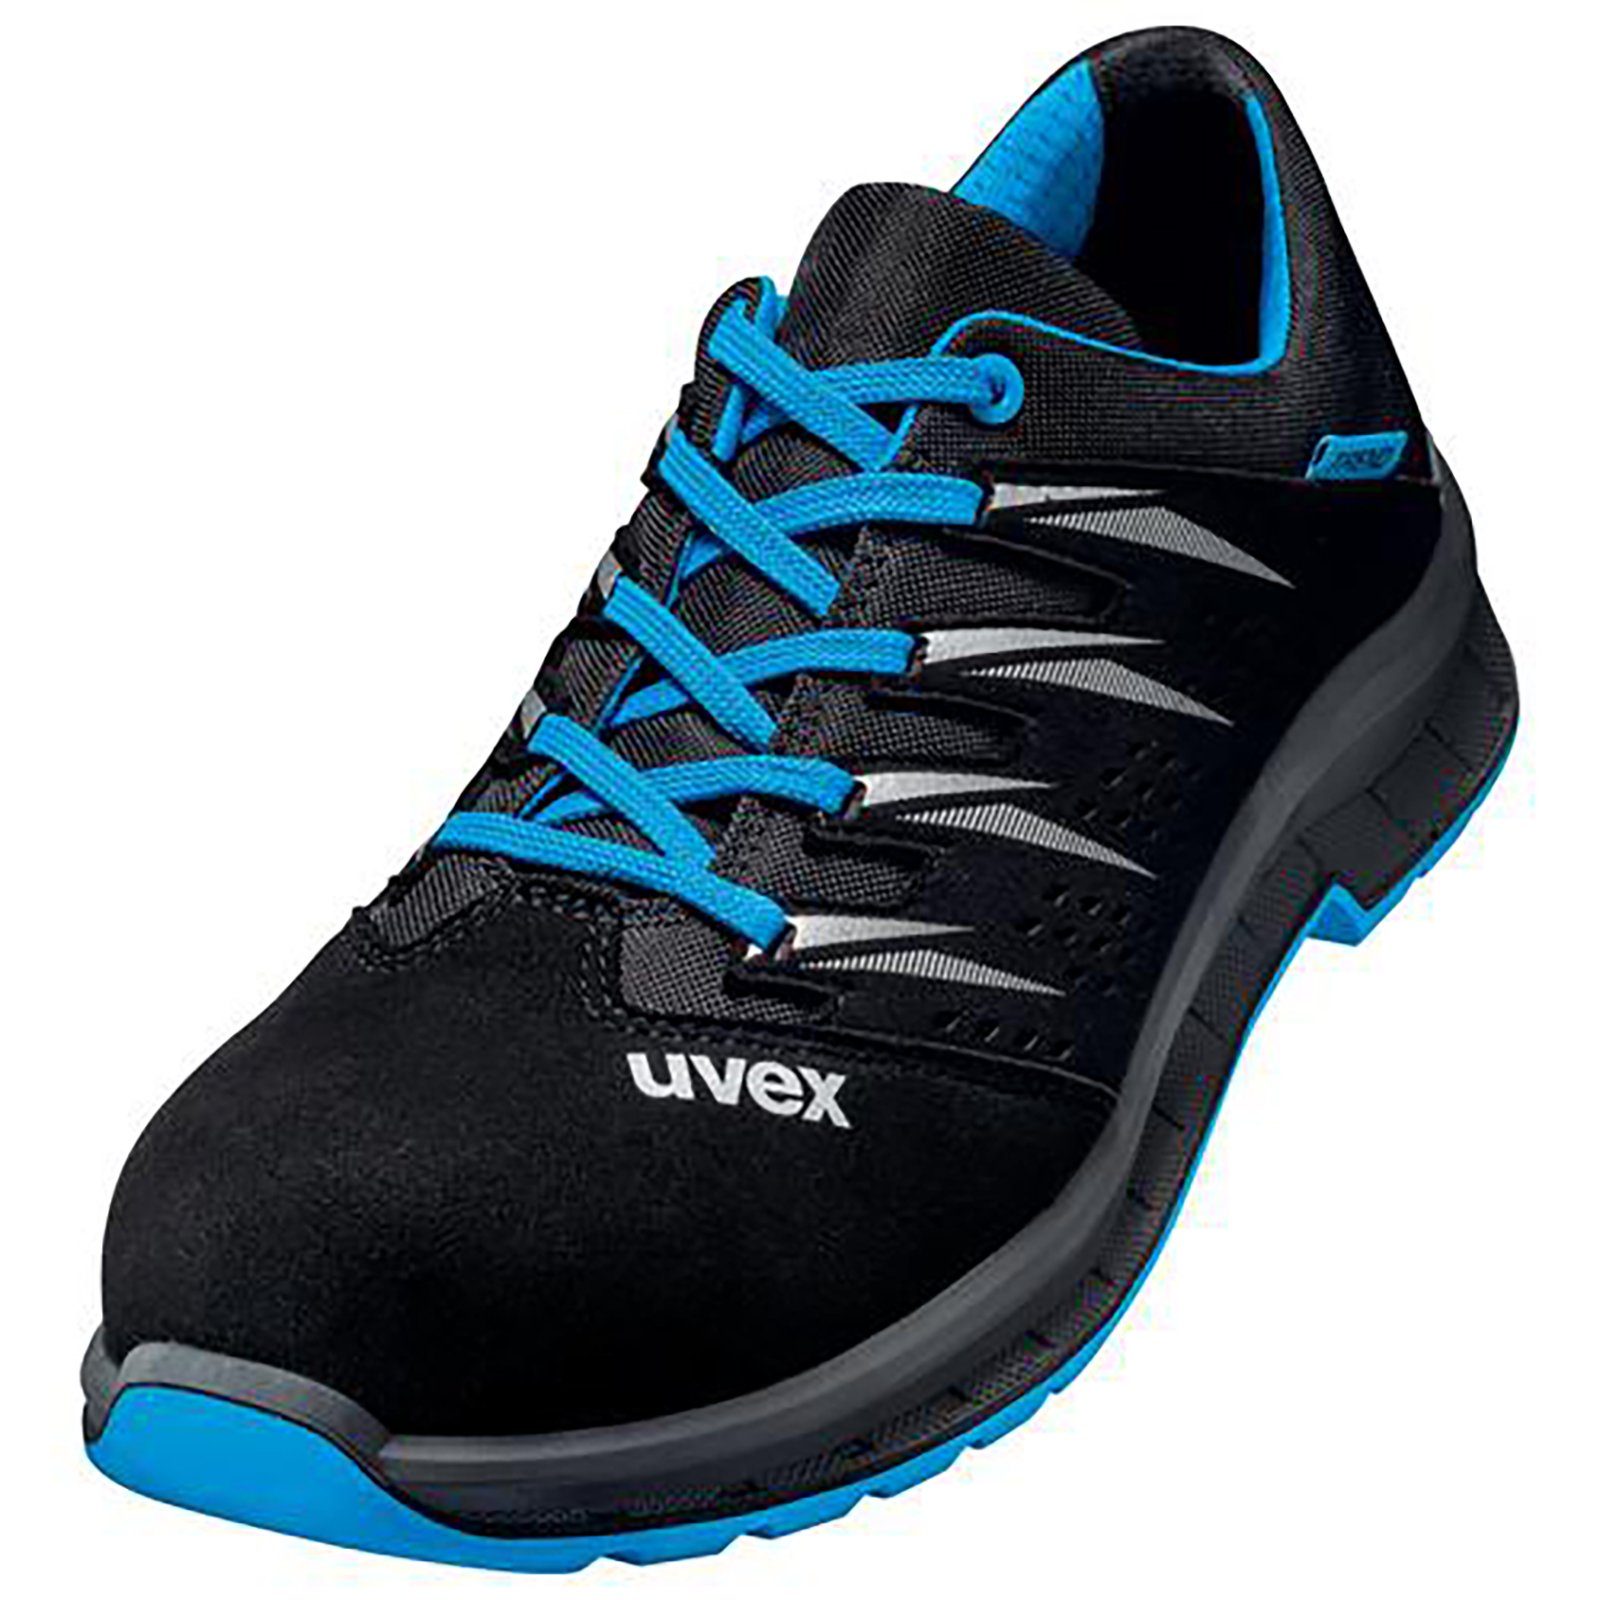 Uvex 2 trend Halbschuhe S1 blau, schwarz Weite 11 Sicherheitsschuh